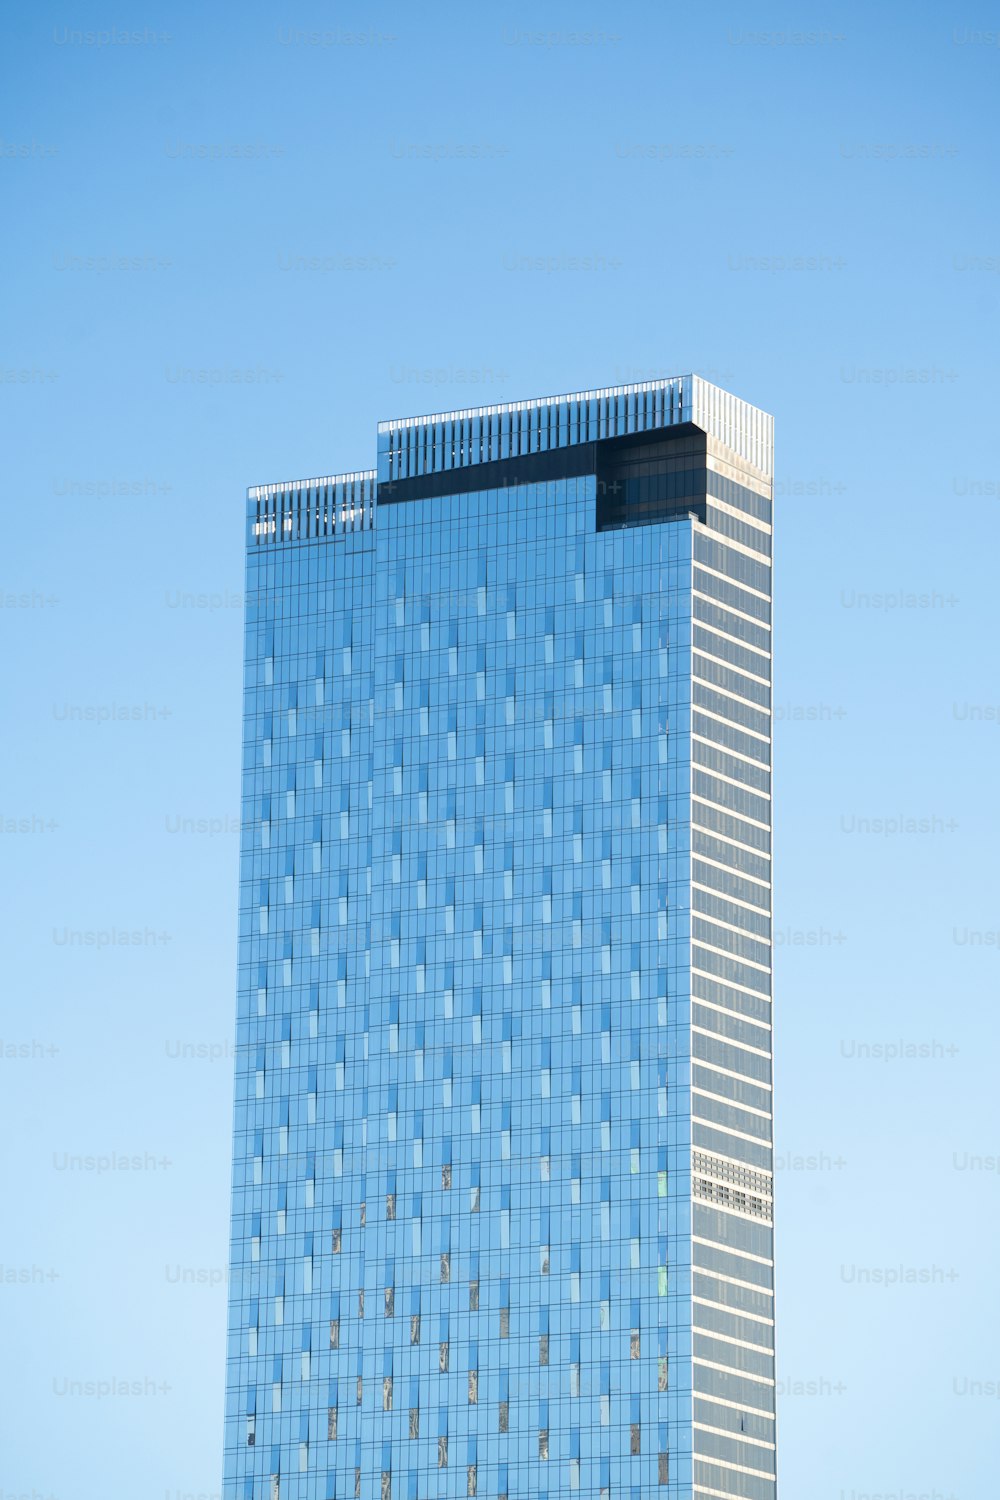 Un edificio molto alto con molte finestre